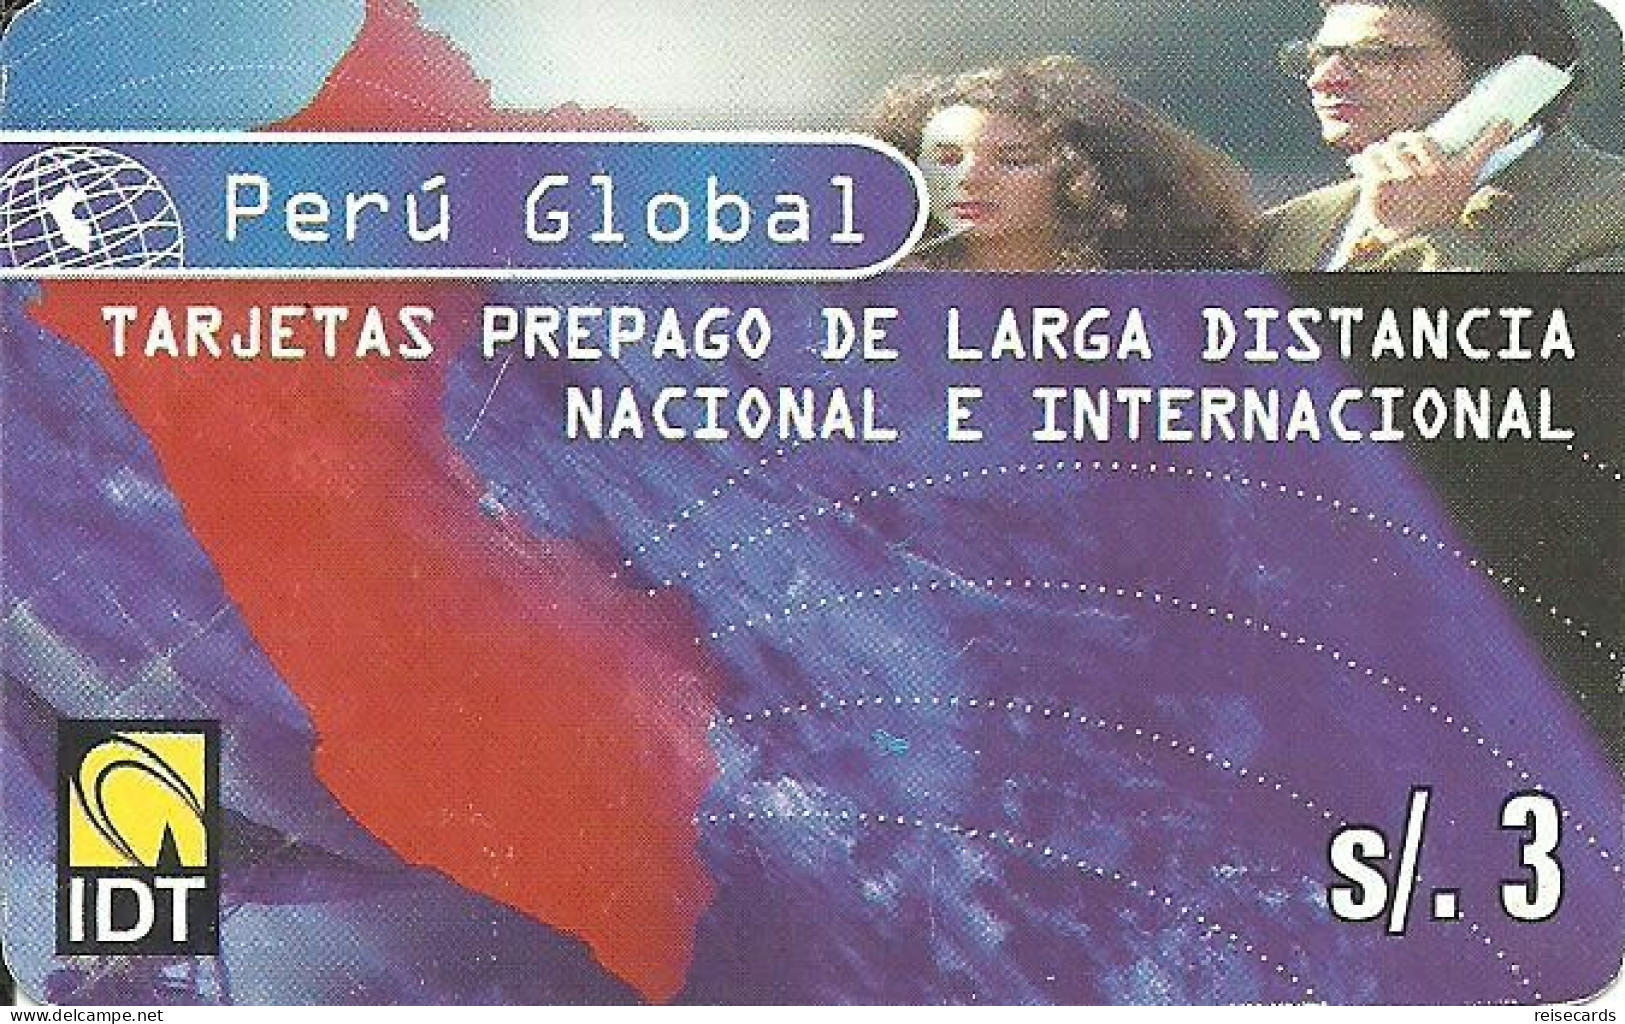 Peru: Prepaid IDT - Alcard Perú Global - Perù